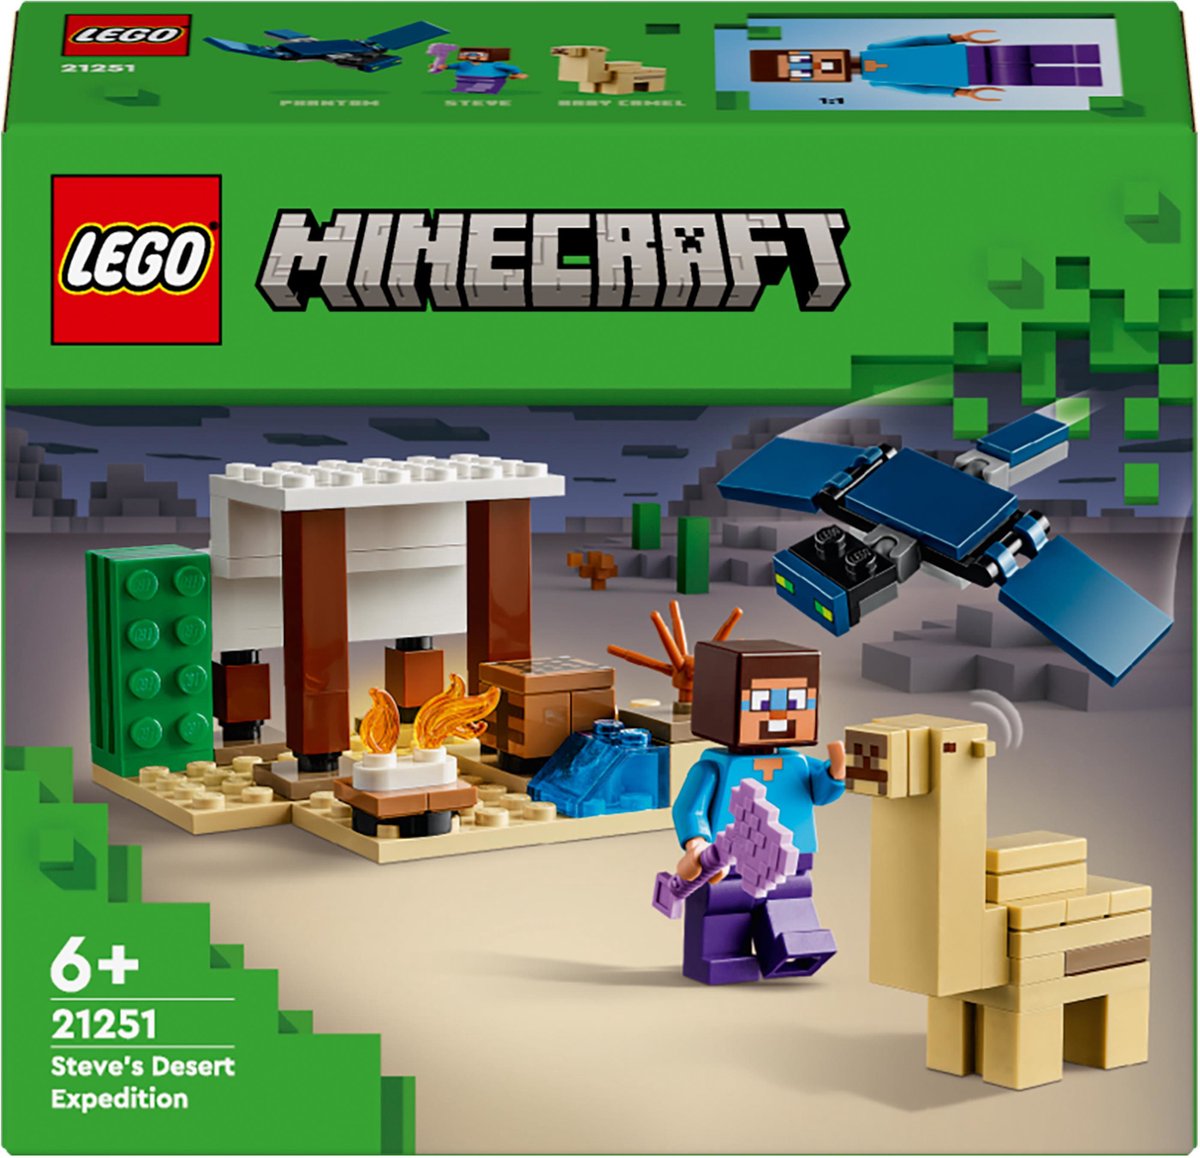 LEGO 21178 Minecraft Le Refuge du Renard, Jouet de Construction de Maison &  21240 Minecraft Aventures dans Le Marais, Jouet De Construction, avec